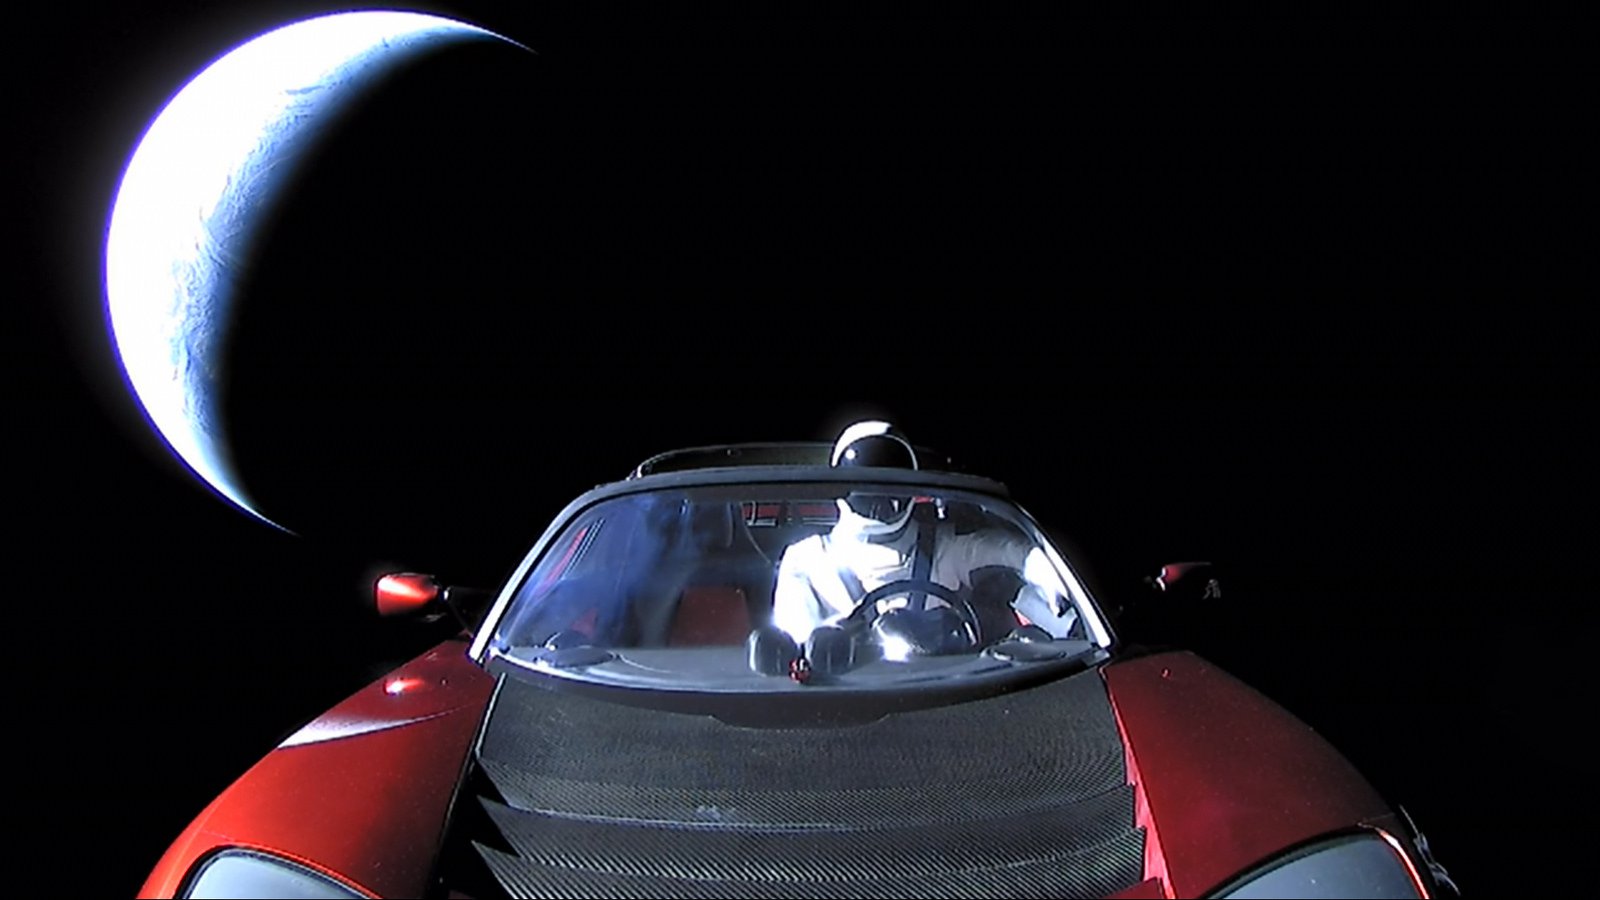 La NASA ha ufficialmente registrato auto Ilona Maschera come oggetto astronomico